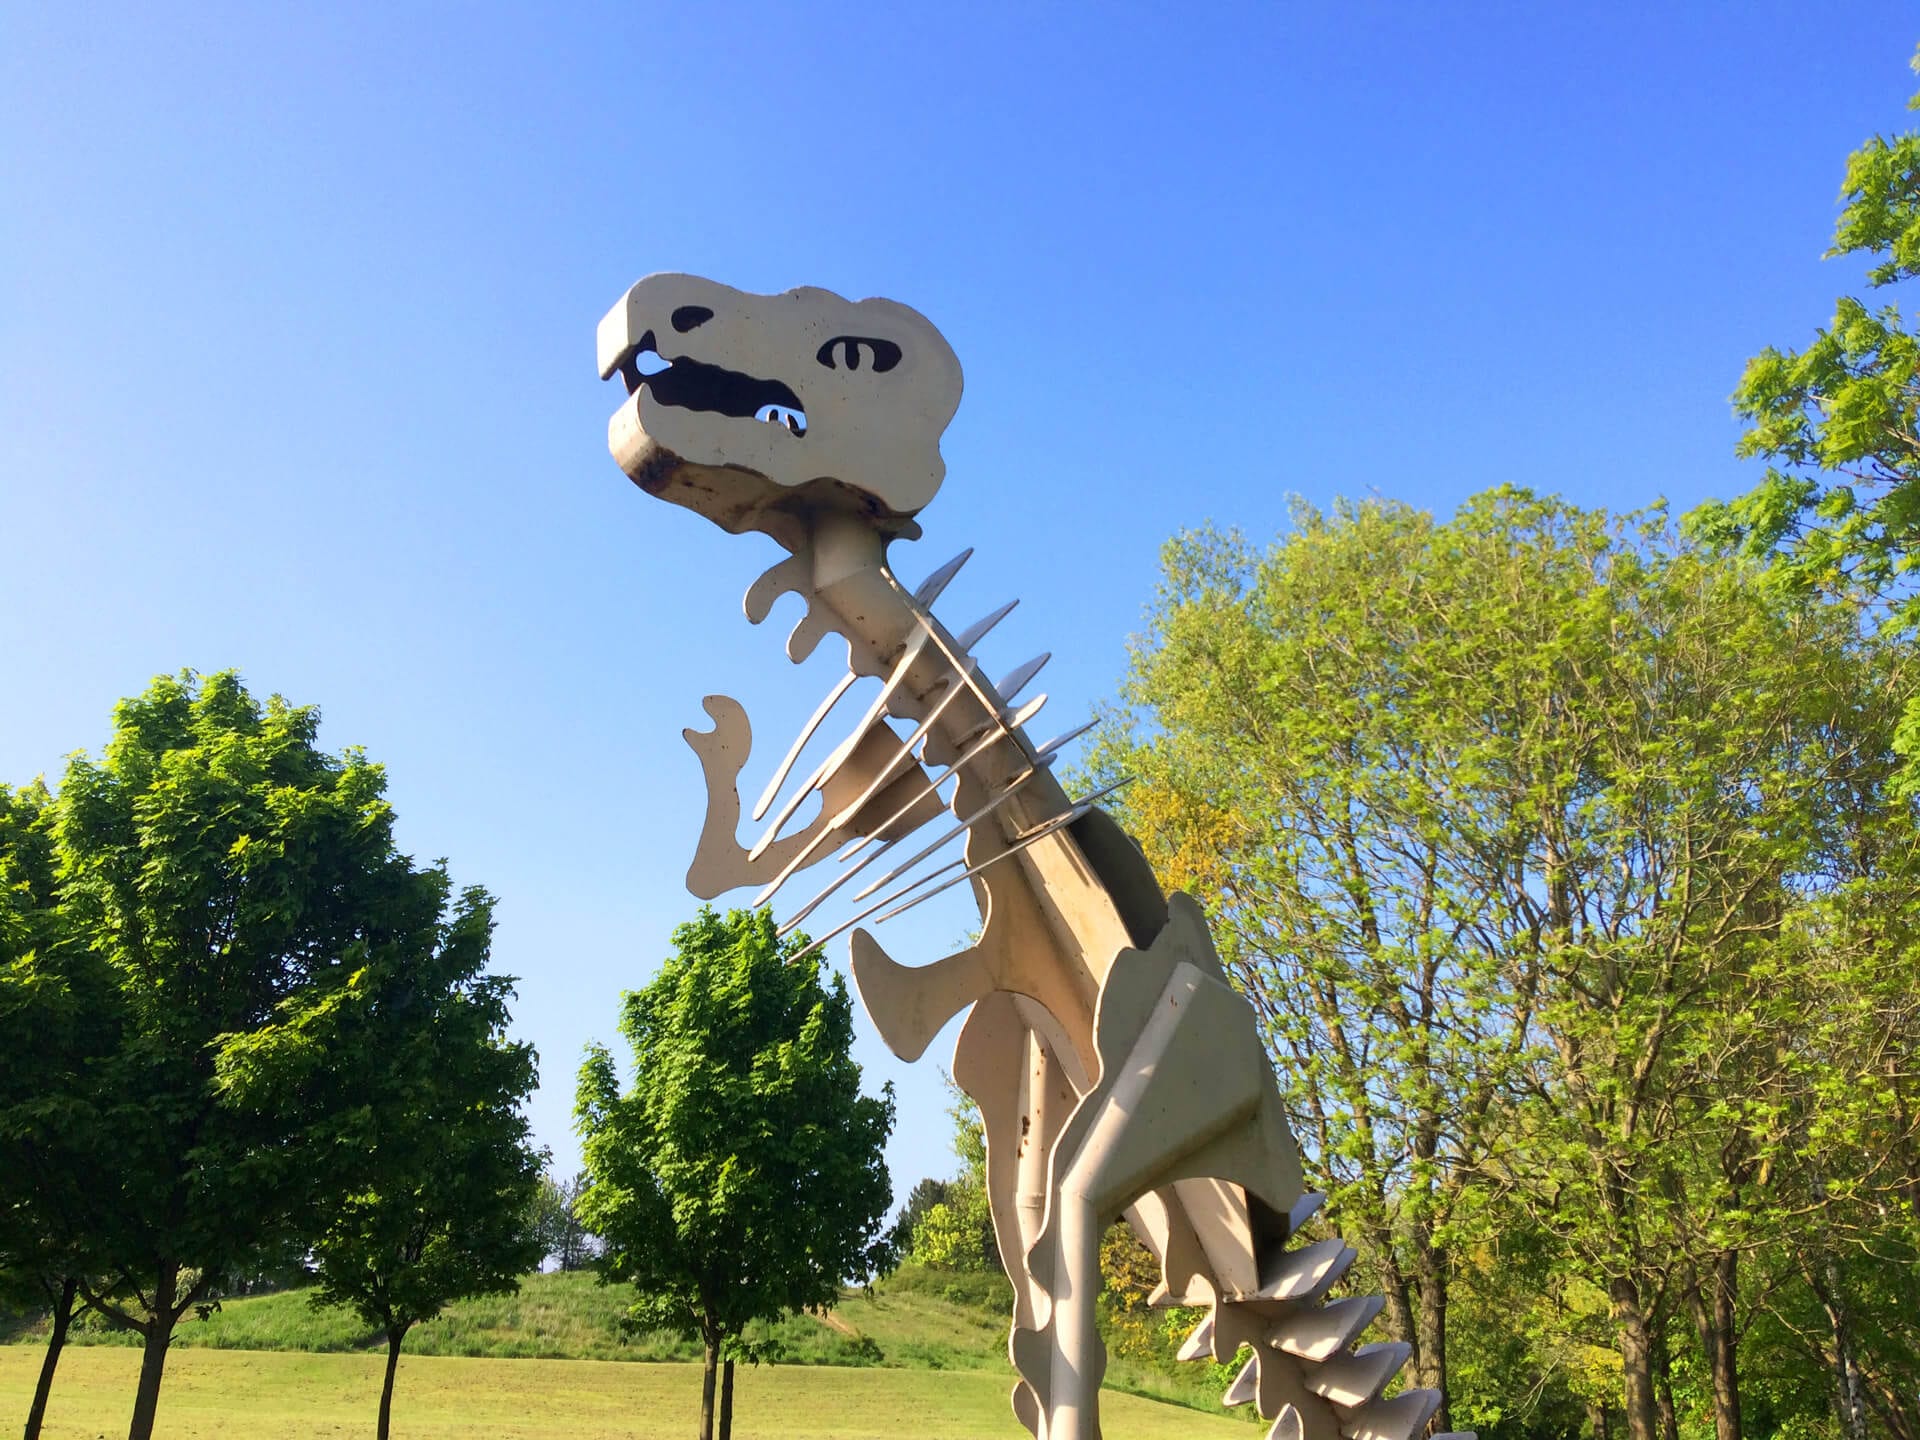 A dinosaur sculpture in Teesaurus Park, Middlesbrough